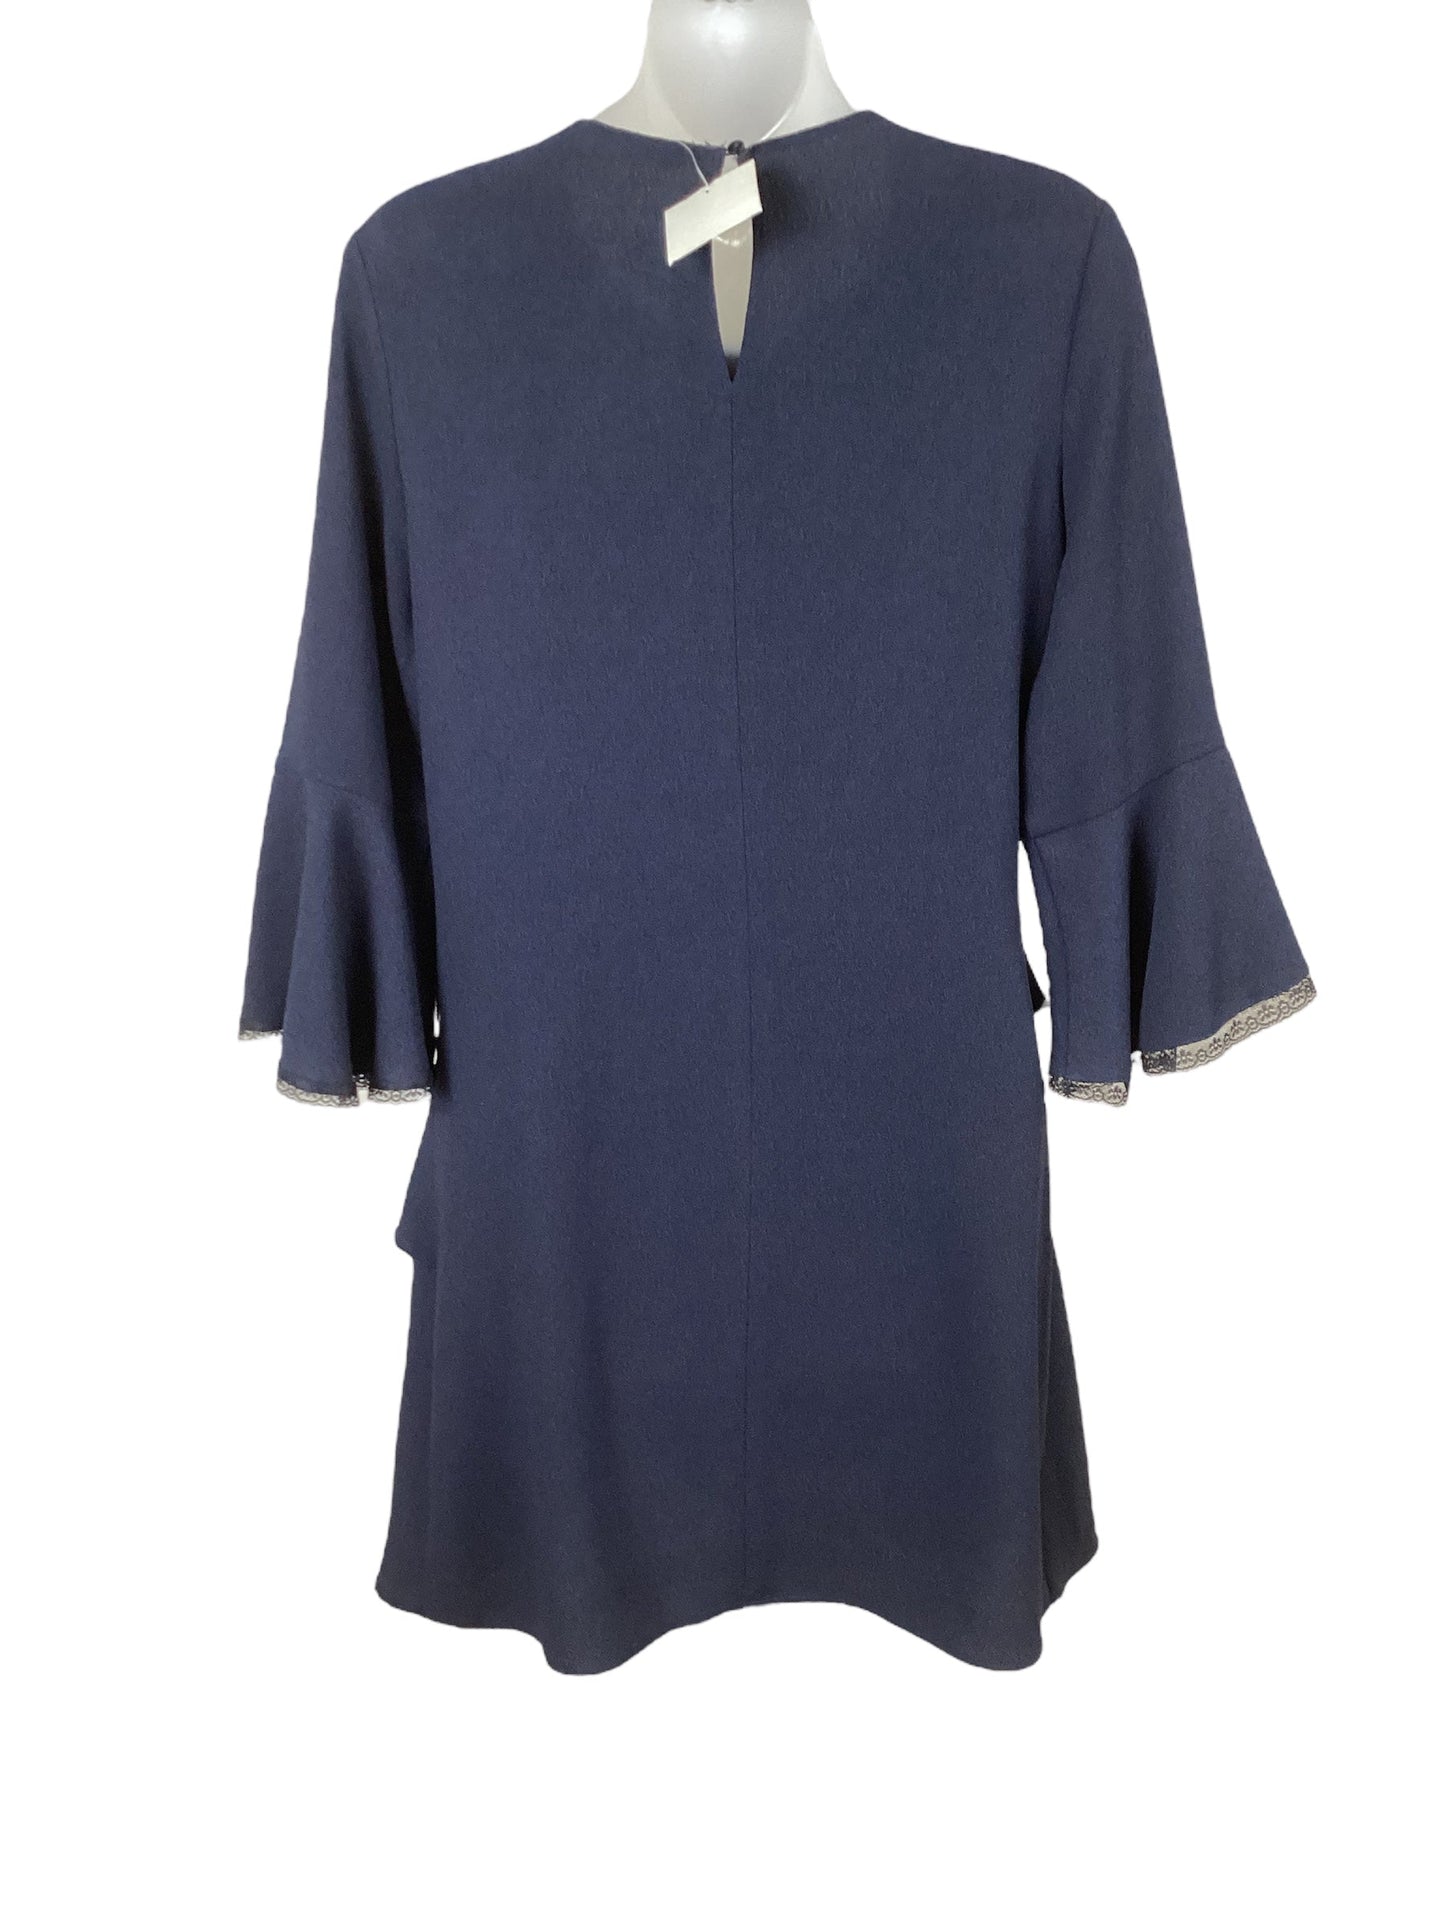 Dress Casual Midi By Zara Basic  Size: S